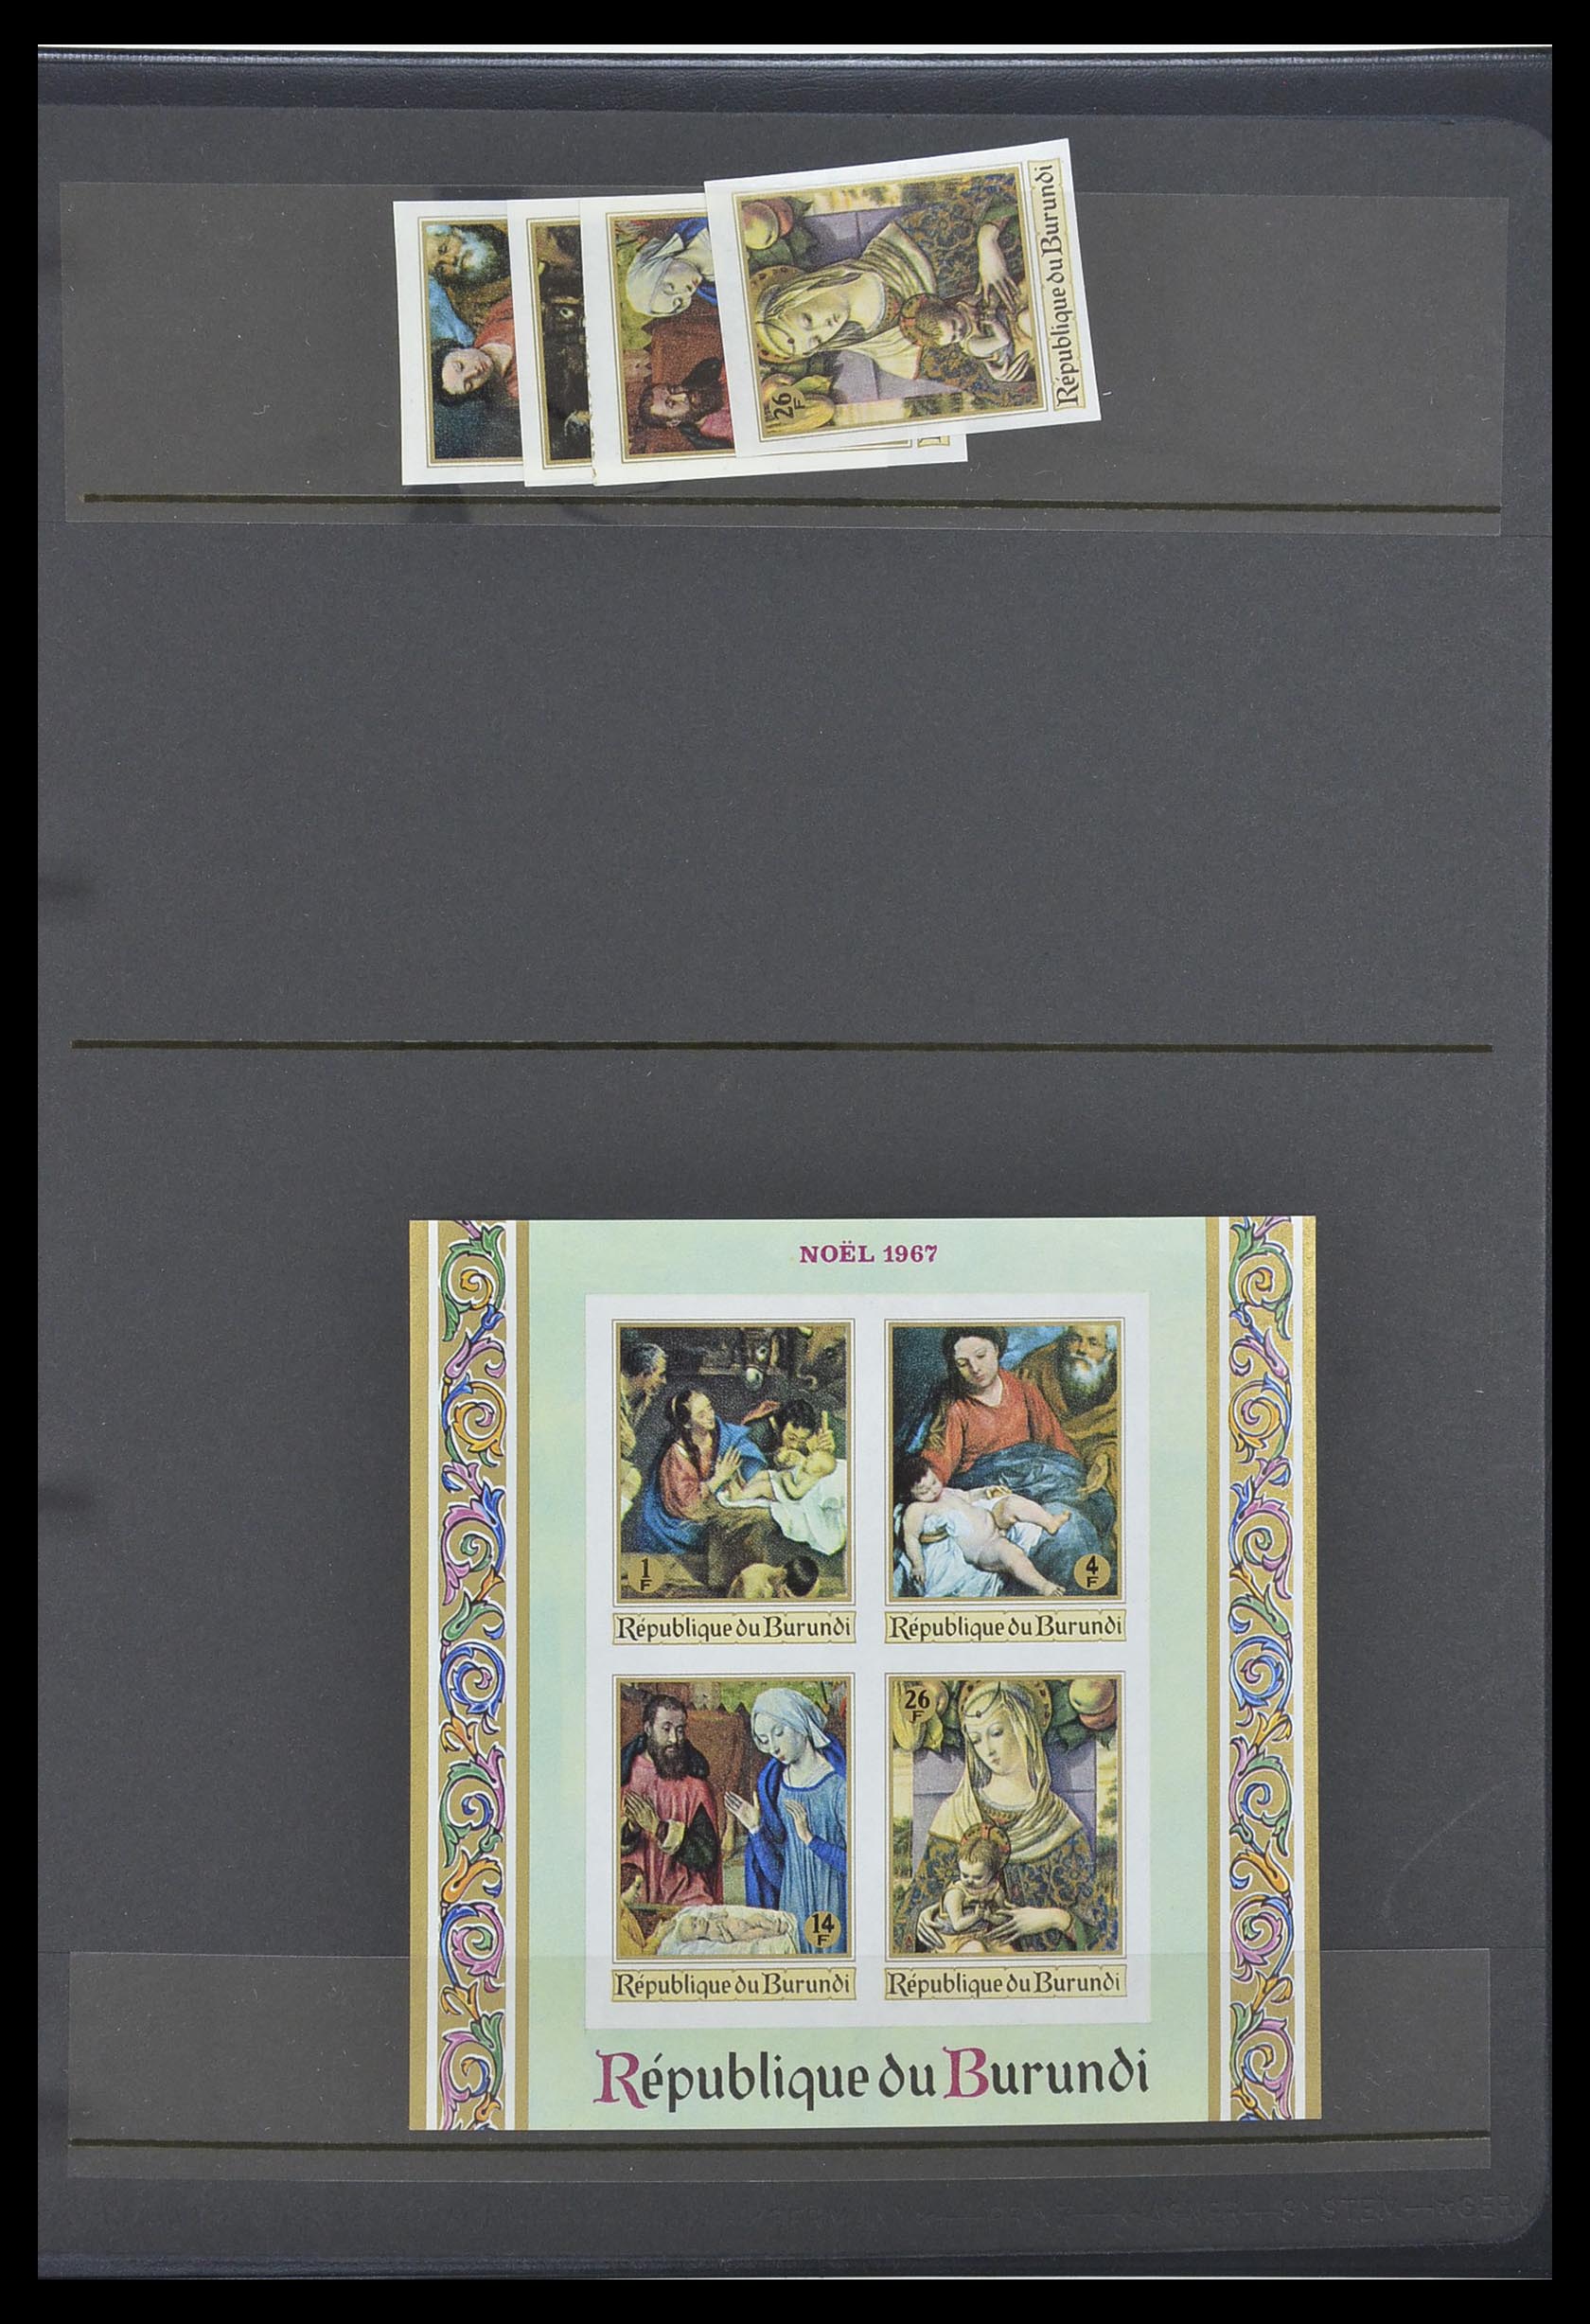 33764 090 - Stamp collection 33764 Burundi 1962-2004.